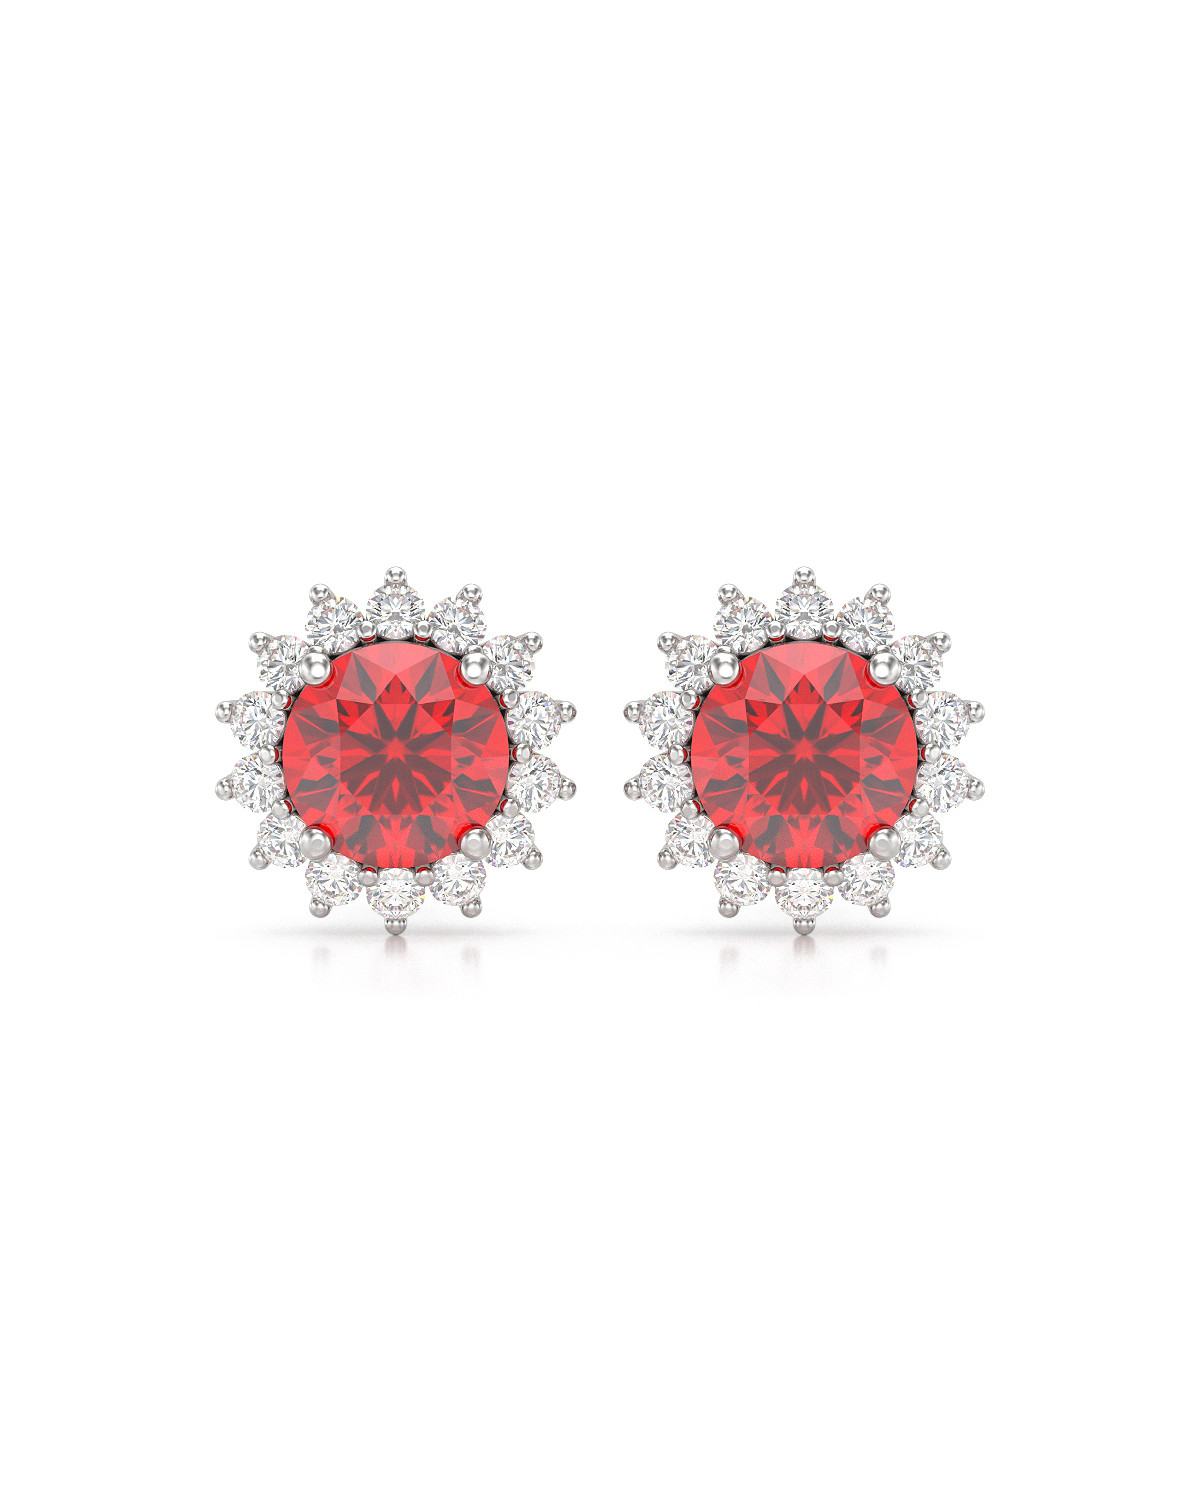 Boucles d'oreille Rubis et Diamants sur Argent 925 2.61grs